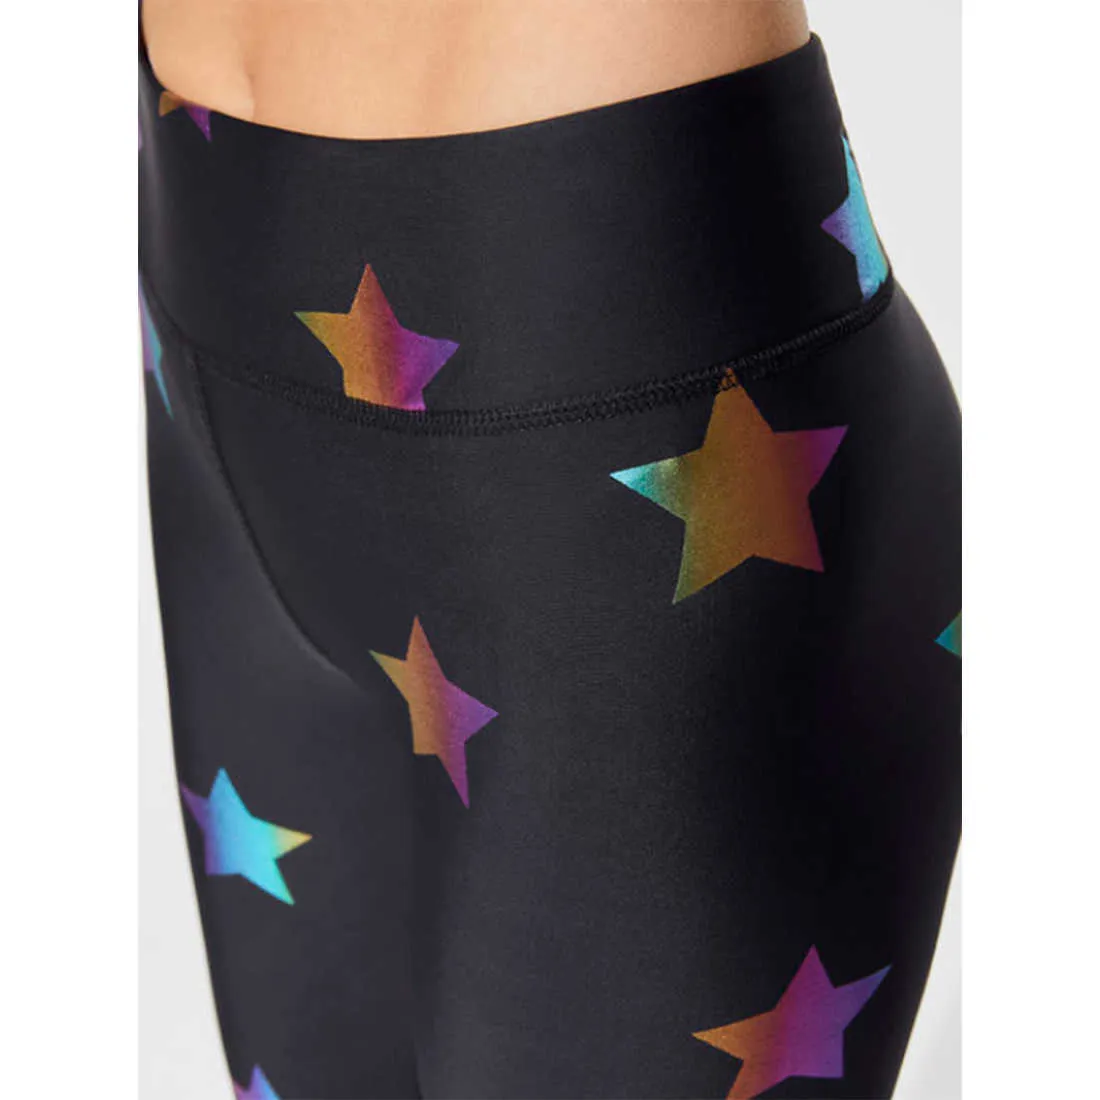 Regali di leggings traspiranti skinny stampati digitali con motivo a stelle colorate moda donna 210913